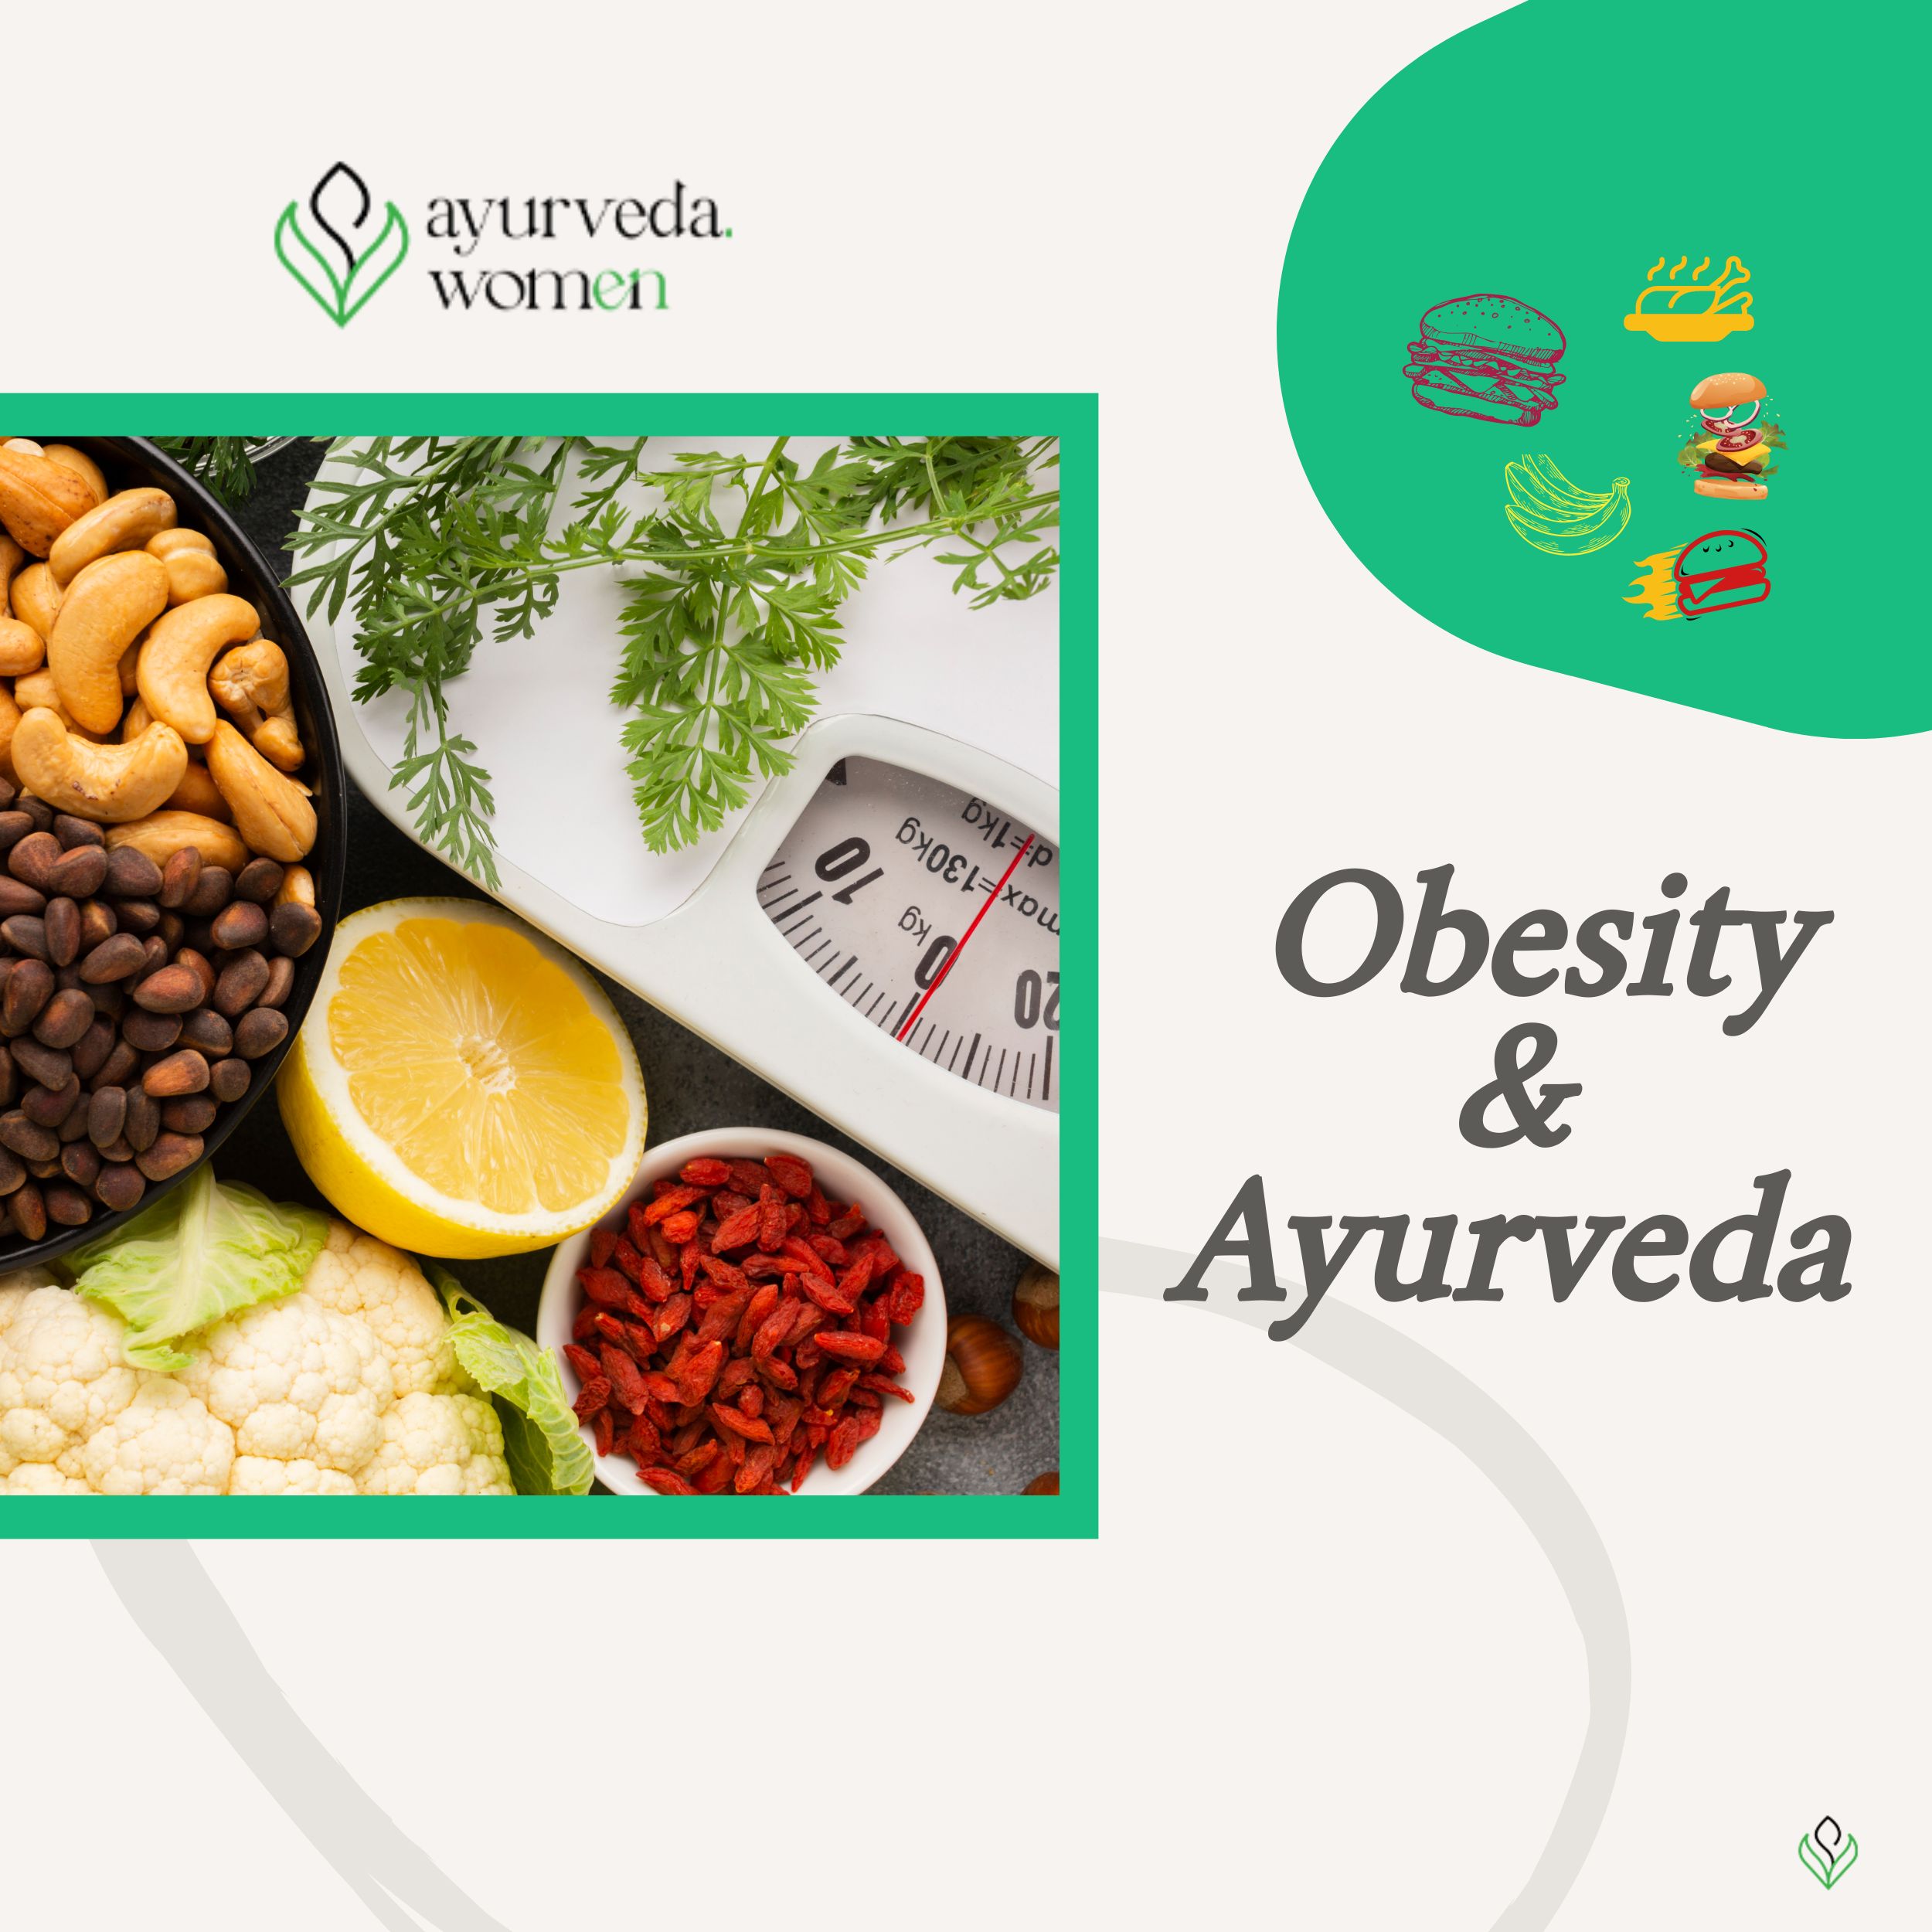  Obesity & Ayurveda